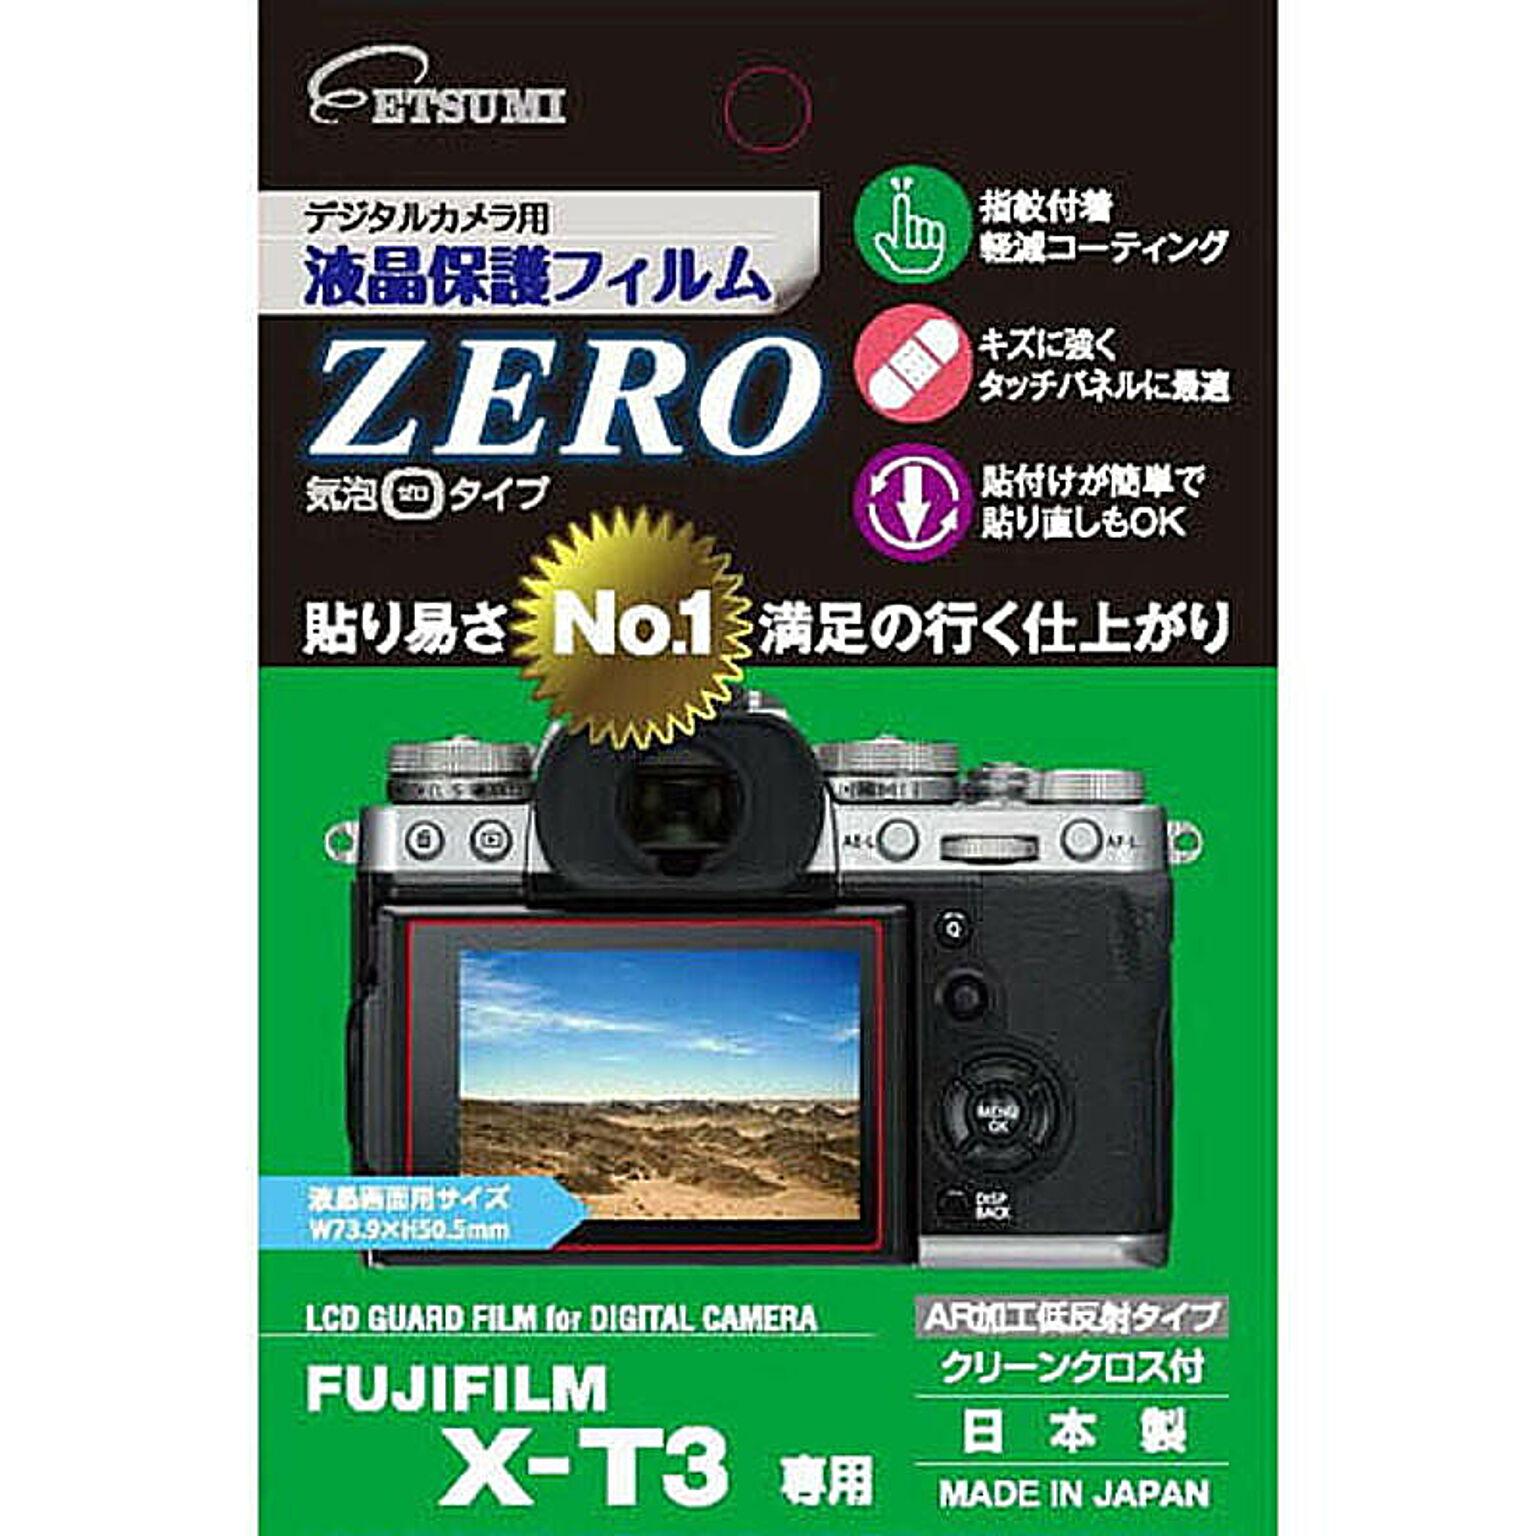 エツミ デジタルカメラ用液晶保護フィルムZERO FUJIFILM X-T3専用 VE-7367 管理No. 4975981931994